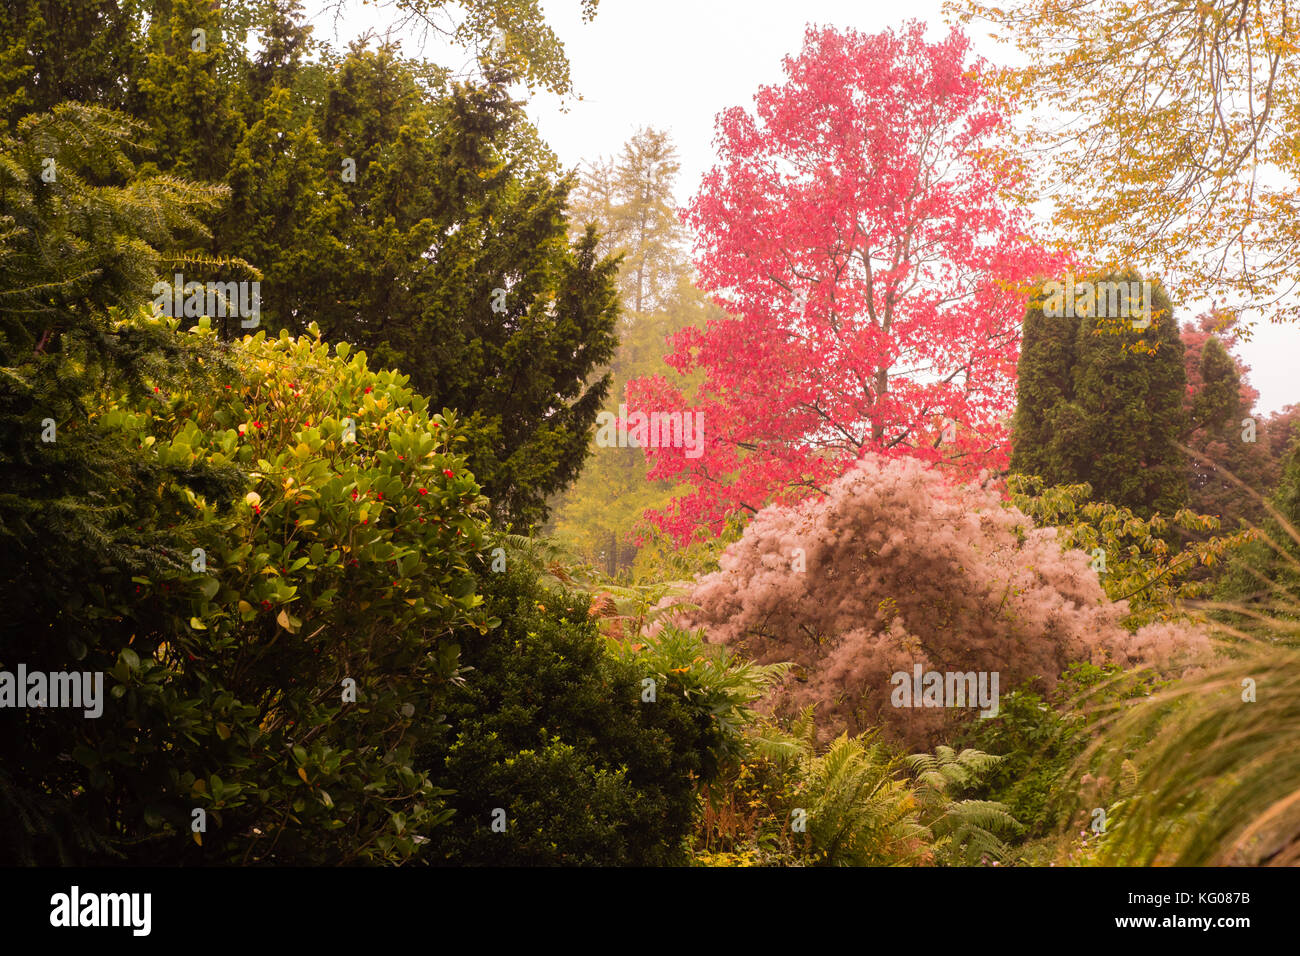 Couleurs d'automne à Bath jardins botaniques. arbres et arbustes automne montrant rouges, jaunes et verts comme des avances d'octobre en Angleterre Banque D'Images